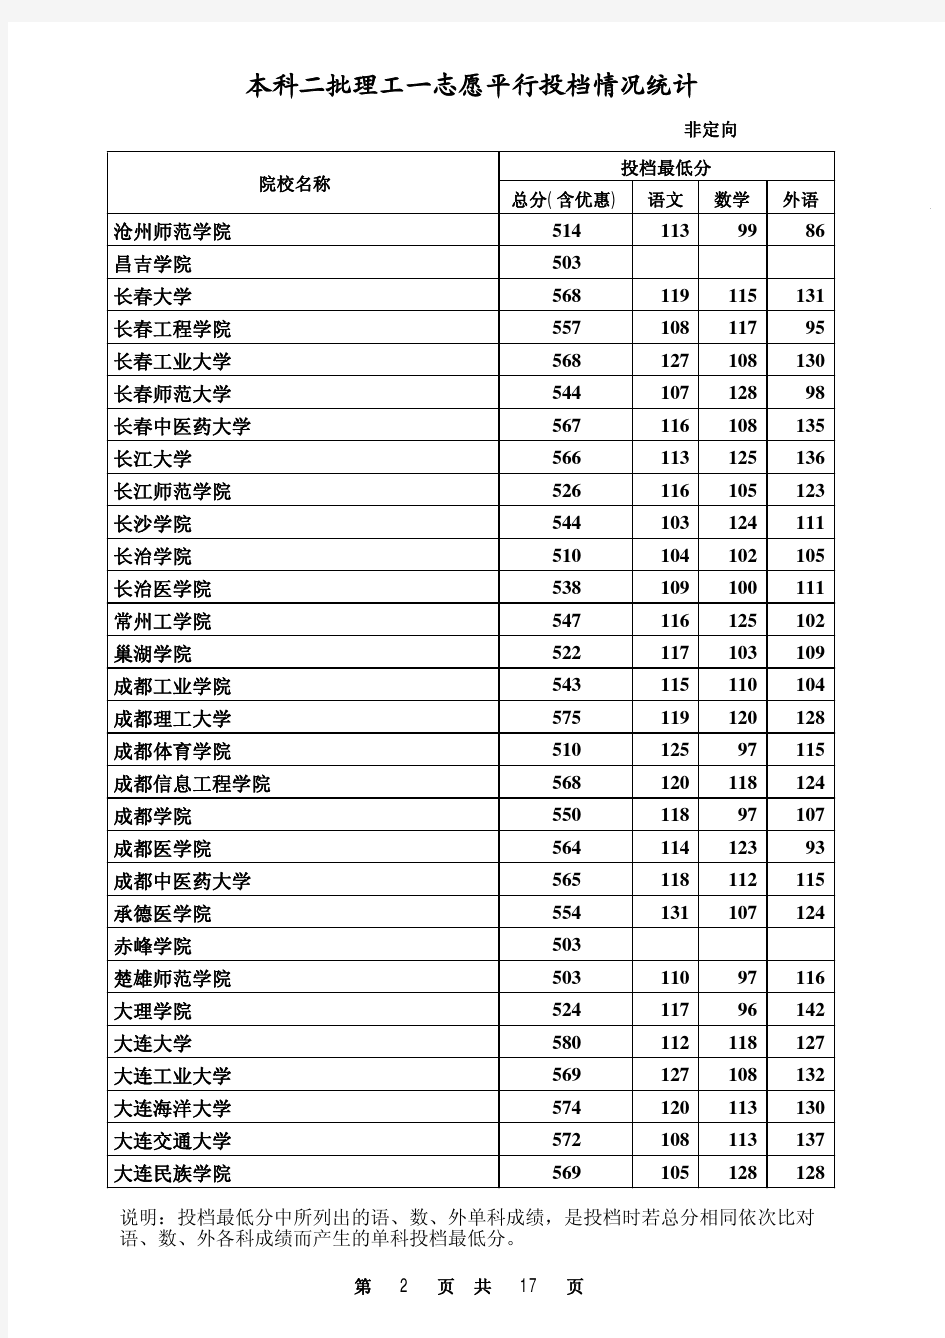 2014年河北省本科二批理工类一志愿平行投档情况统计